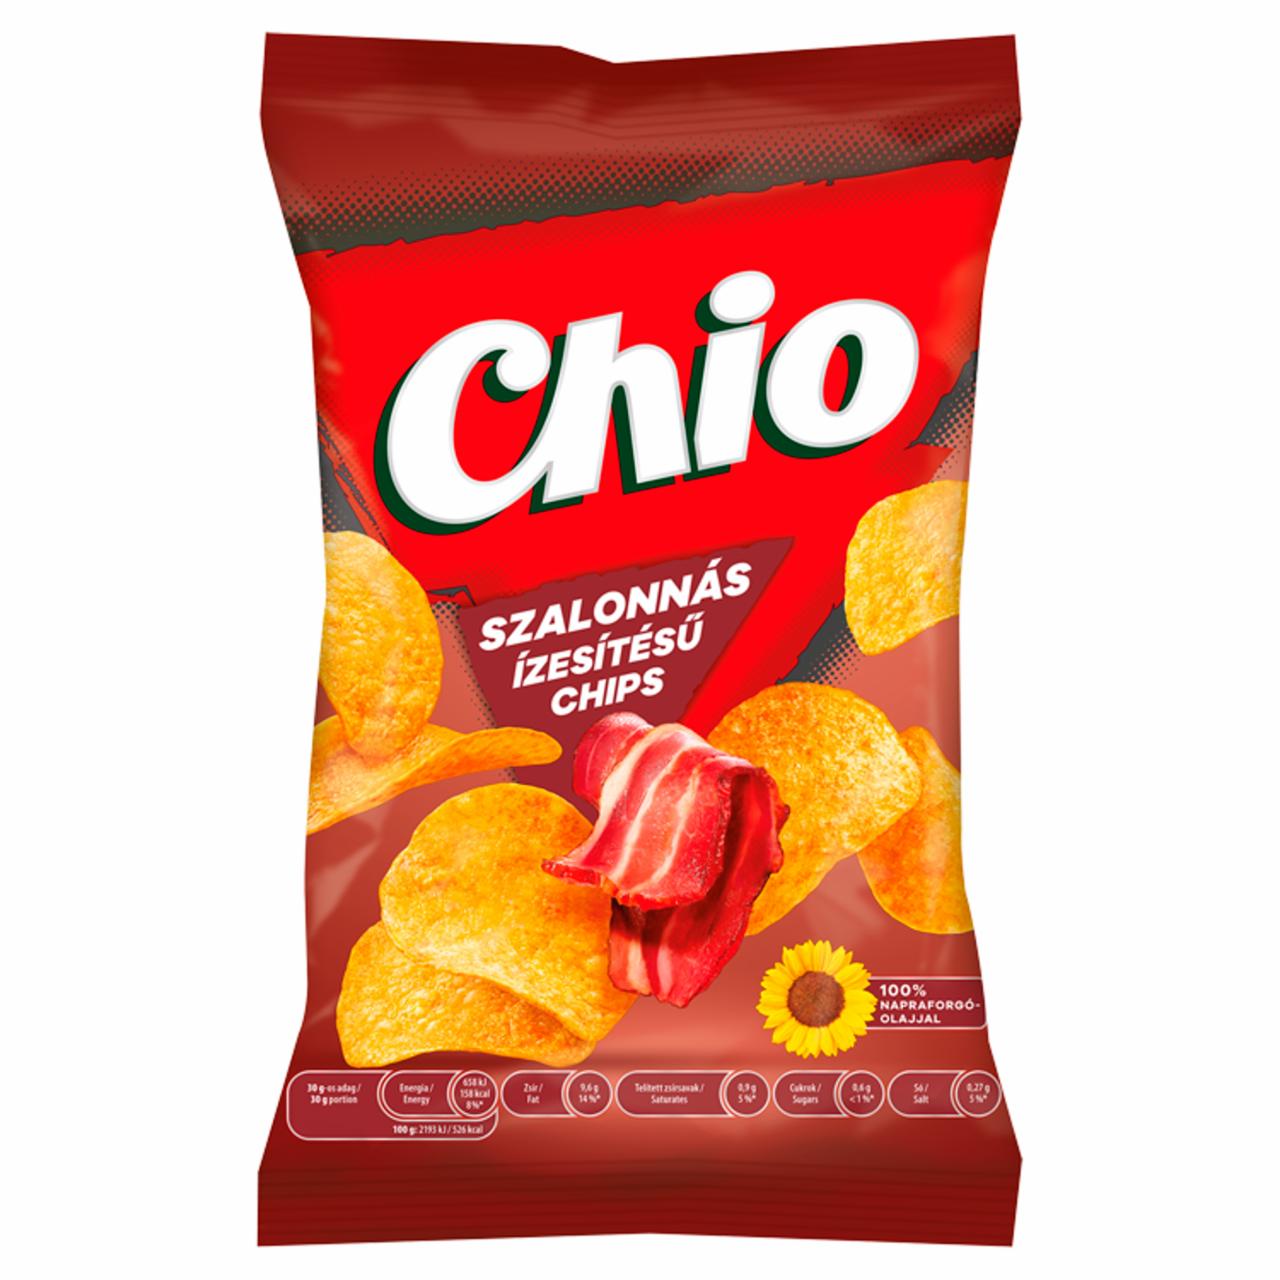 Képek - Chio szalonnás ízesítésű chips 60 g